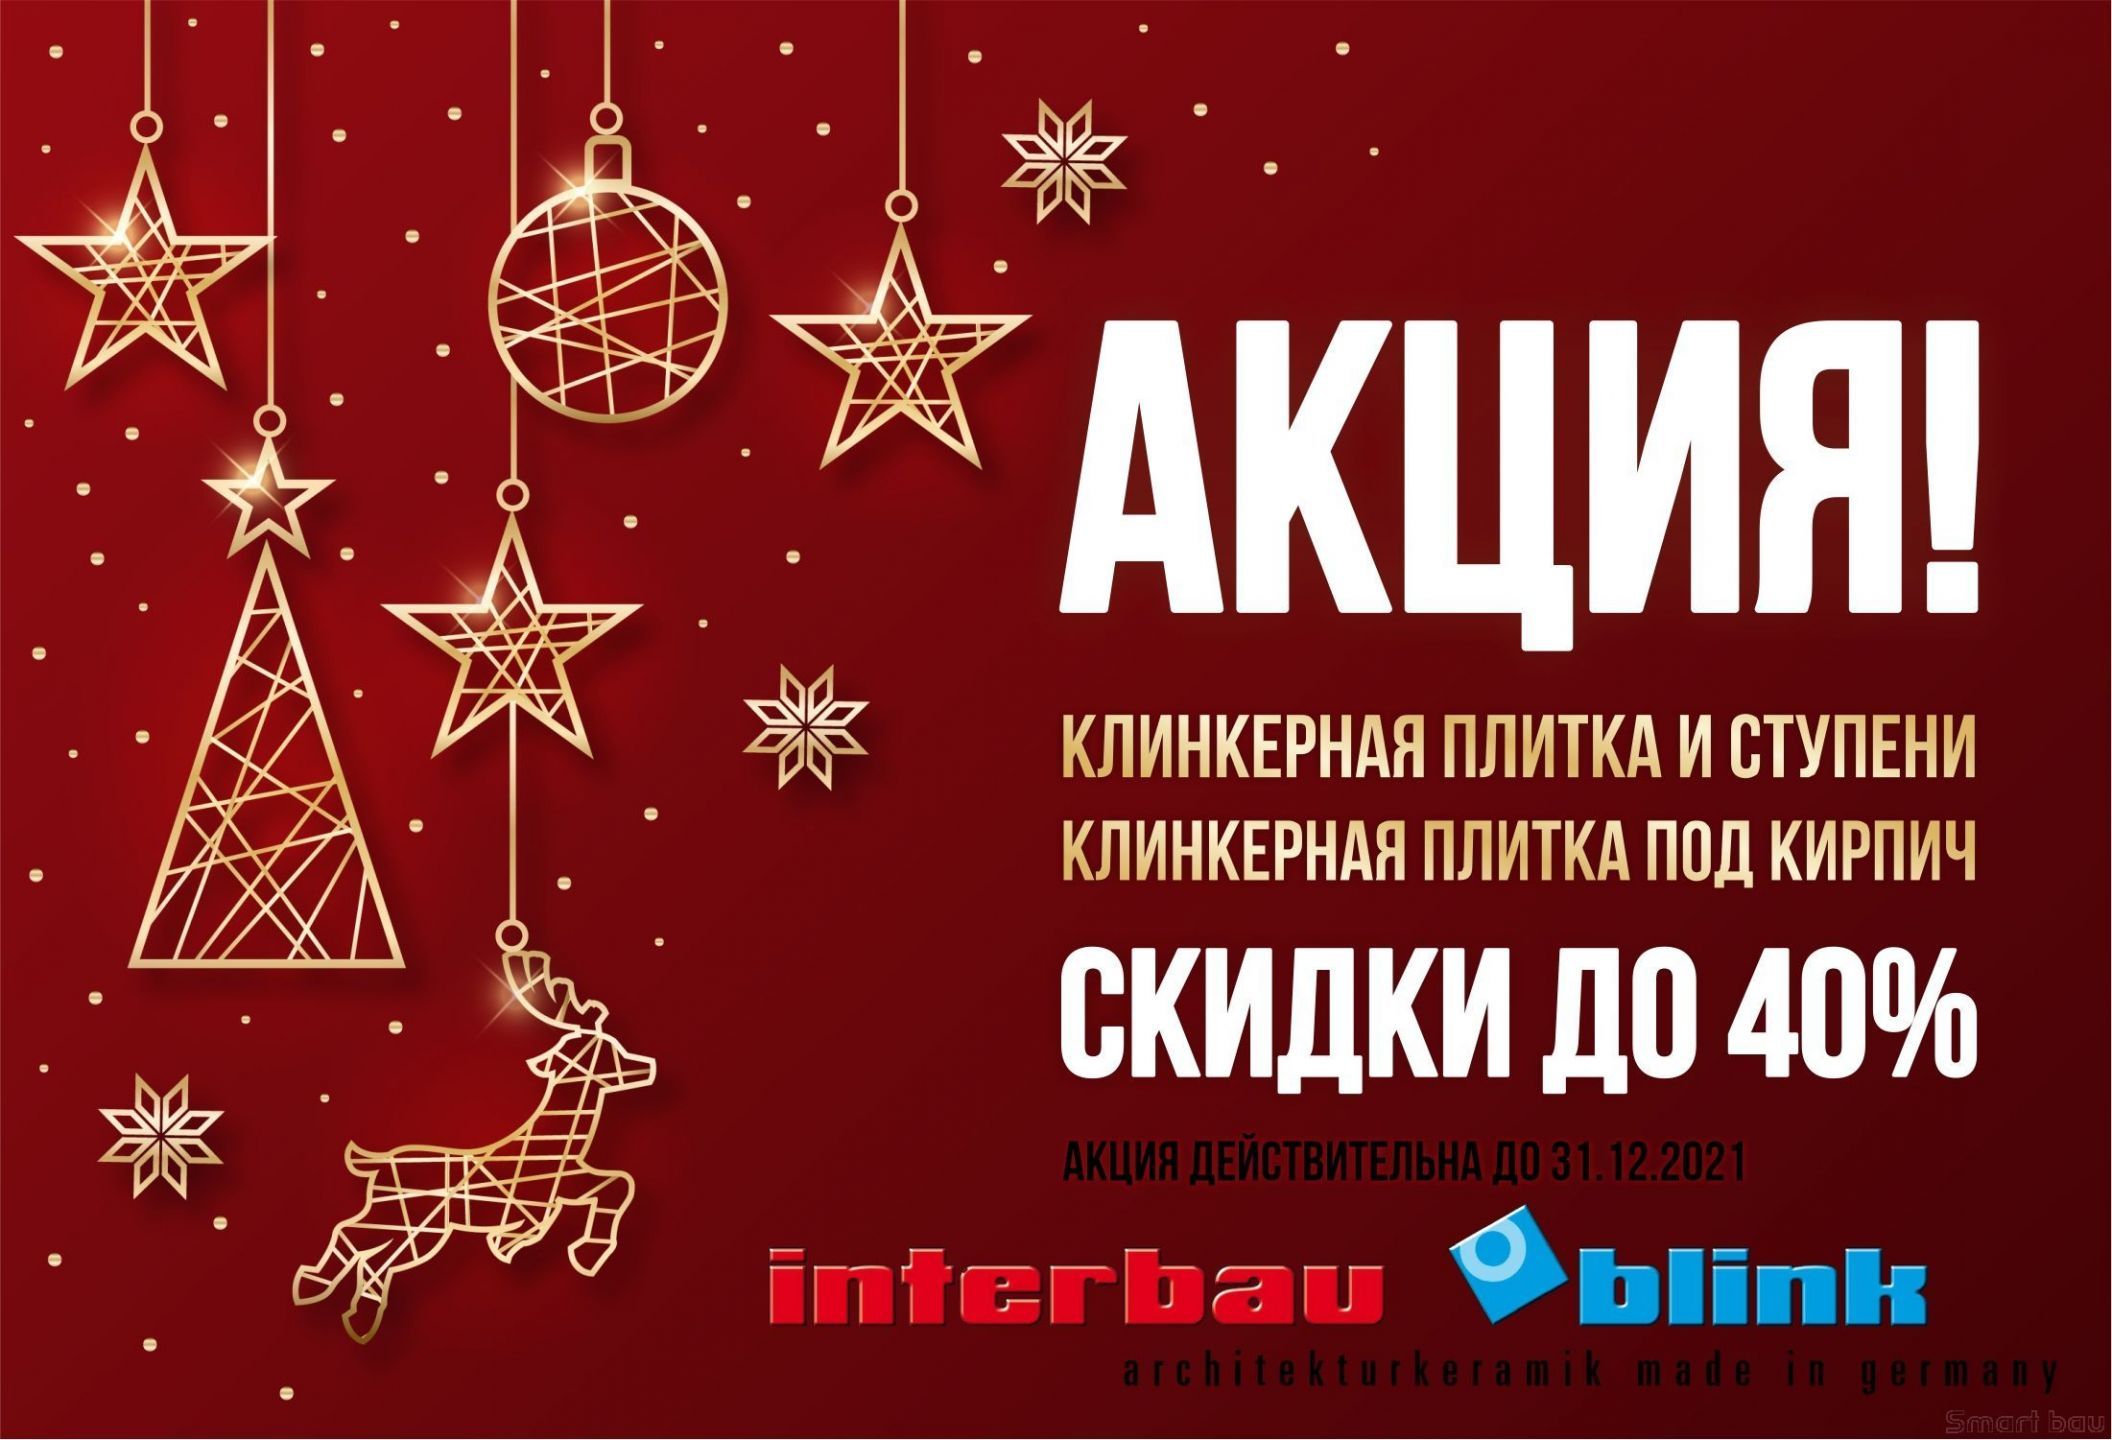 Сезонная распродажа продукции  Interbau&Blink и DeKeramik - скидки до 40%!!!